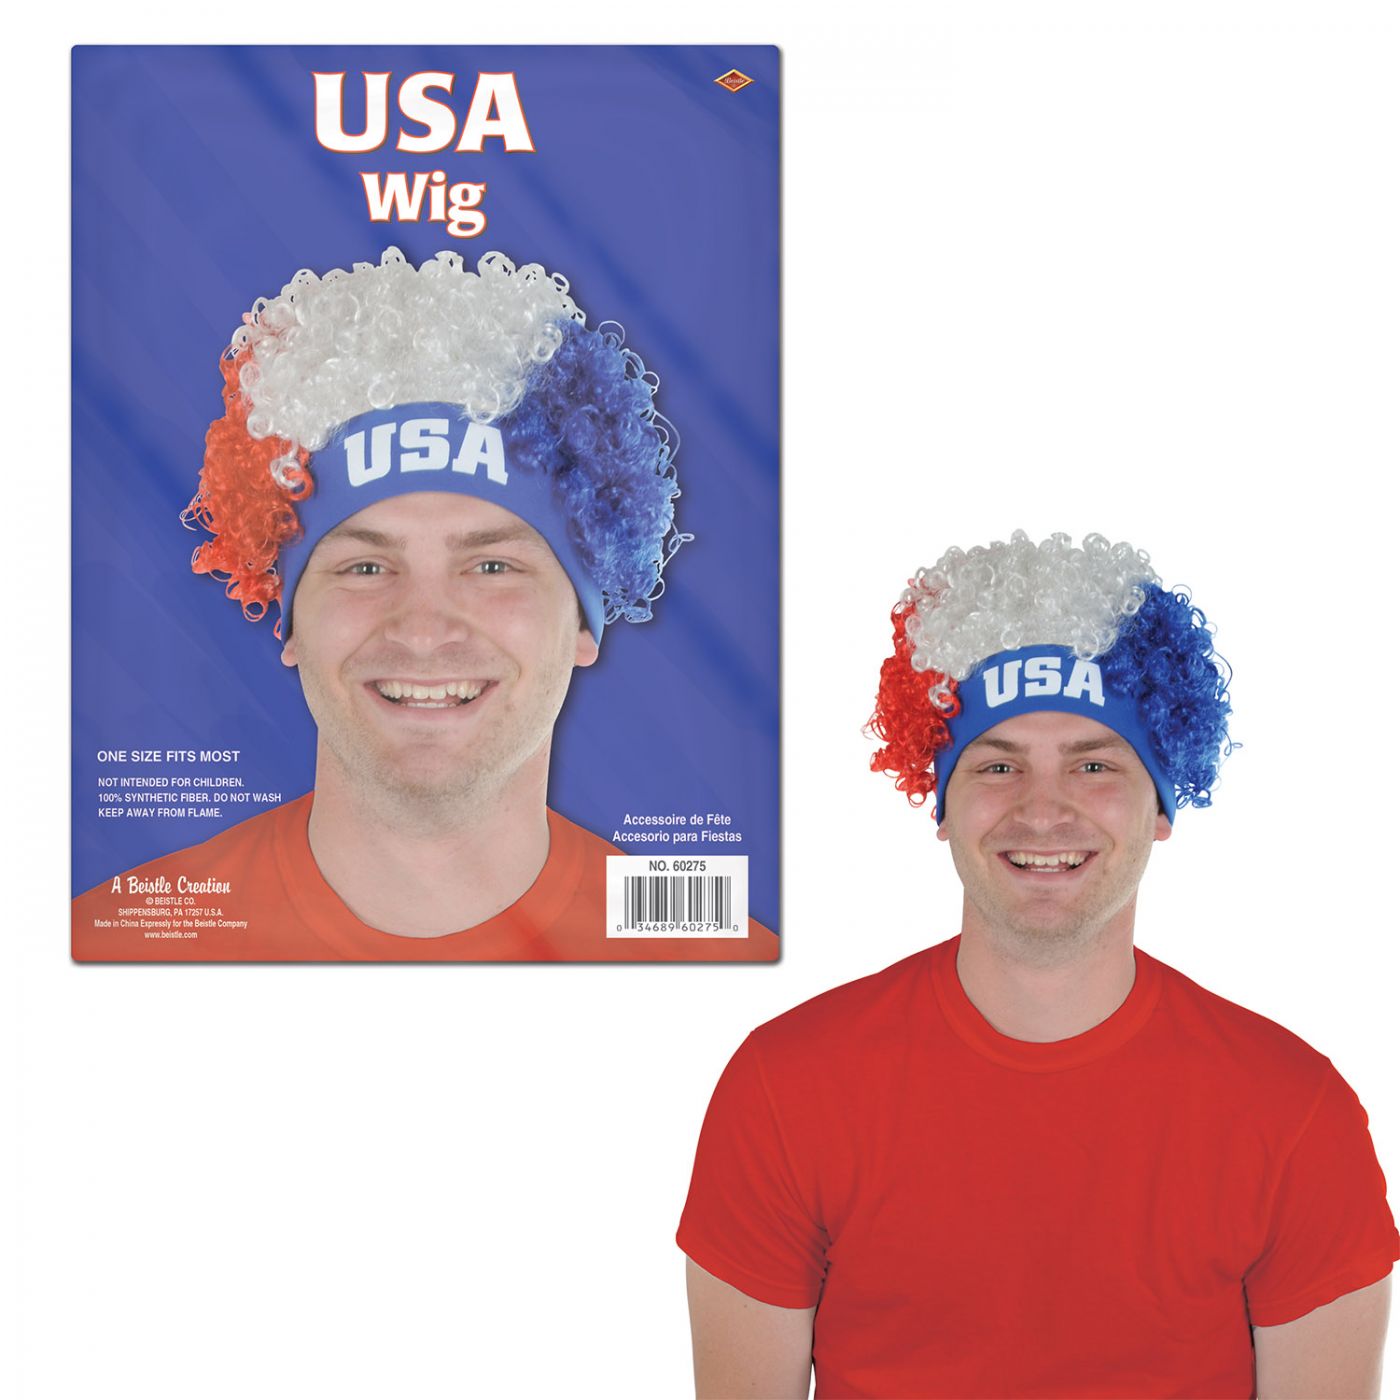 USA Wig image